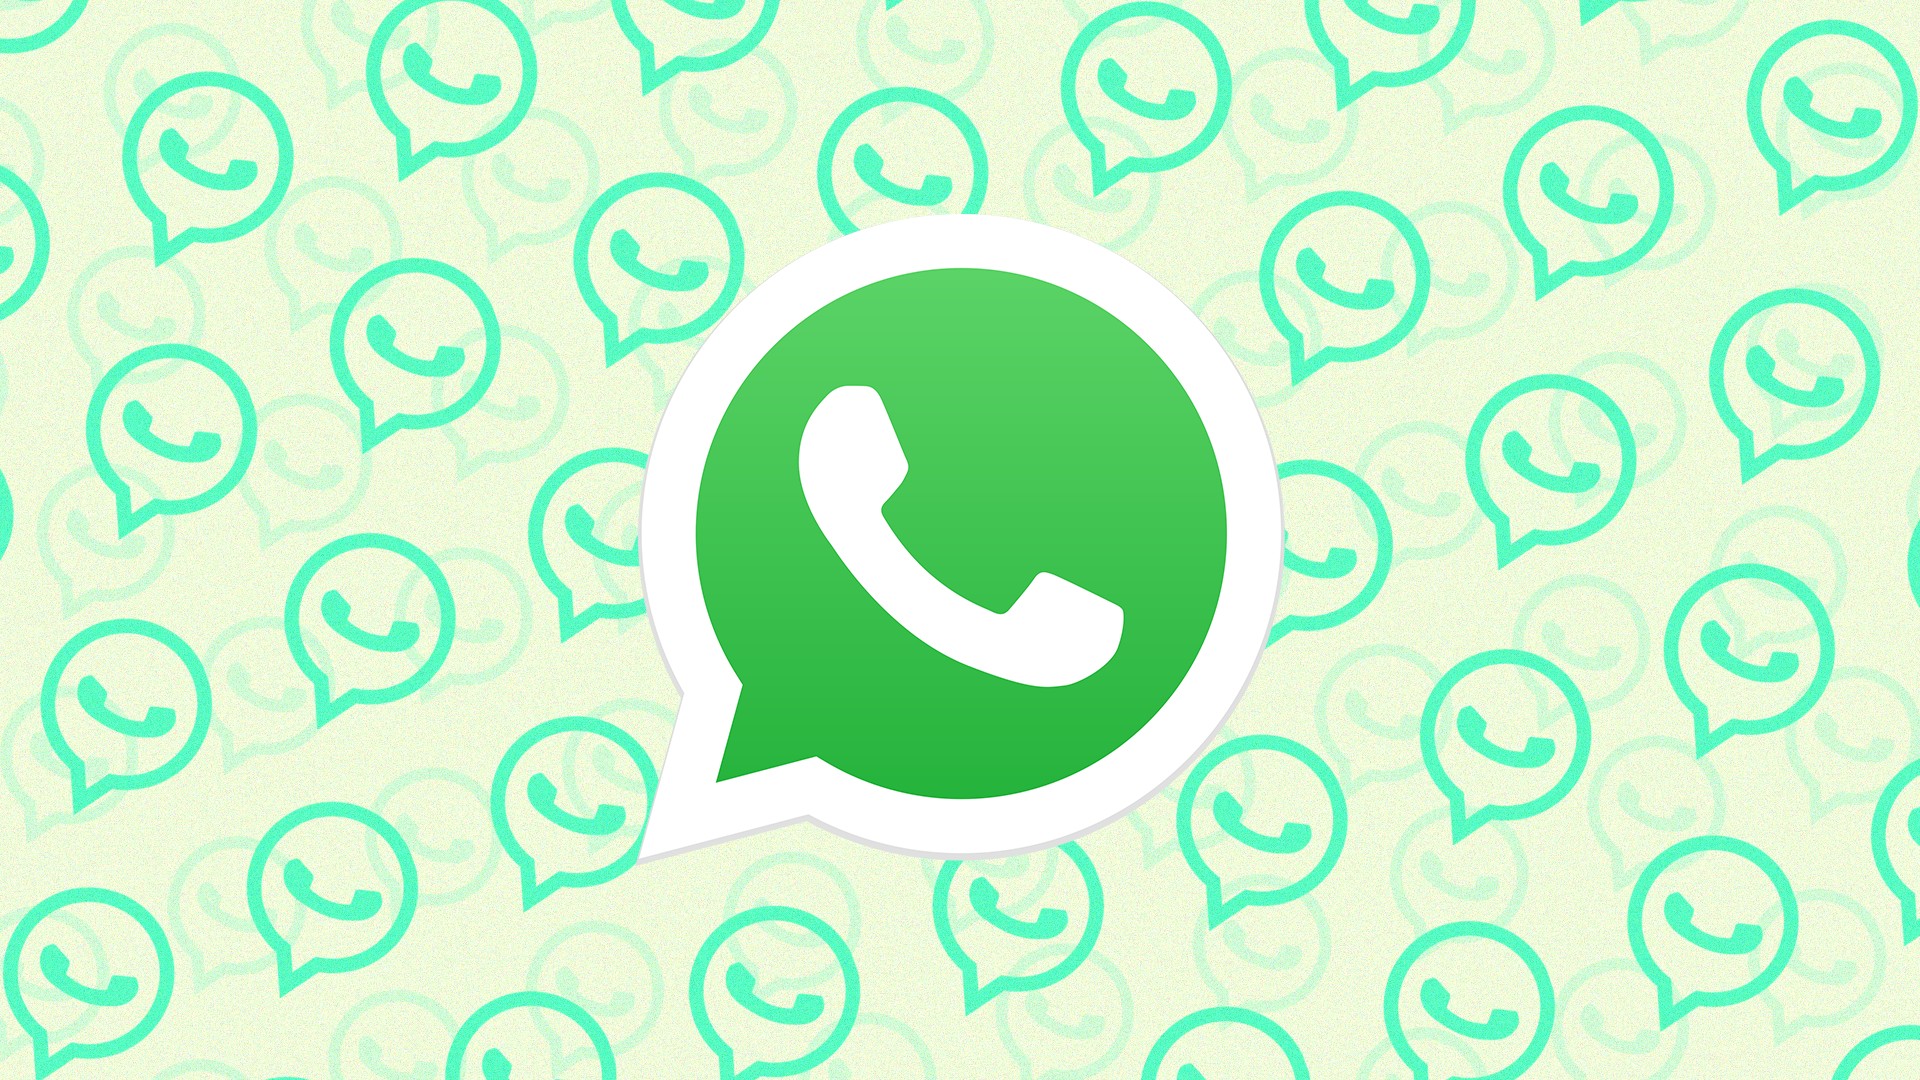 WhatsApp é lançado para relógios inteligentes com sistema Wear OS